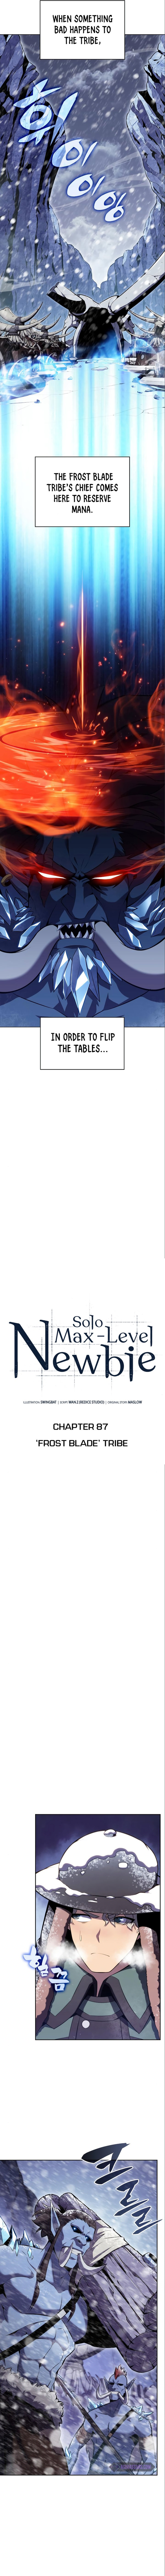 solo_max_level_newbie_87_3